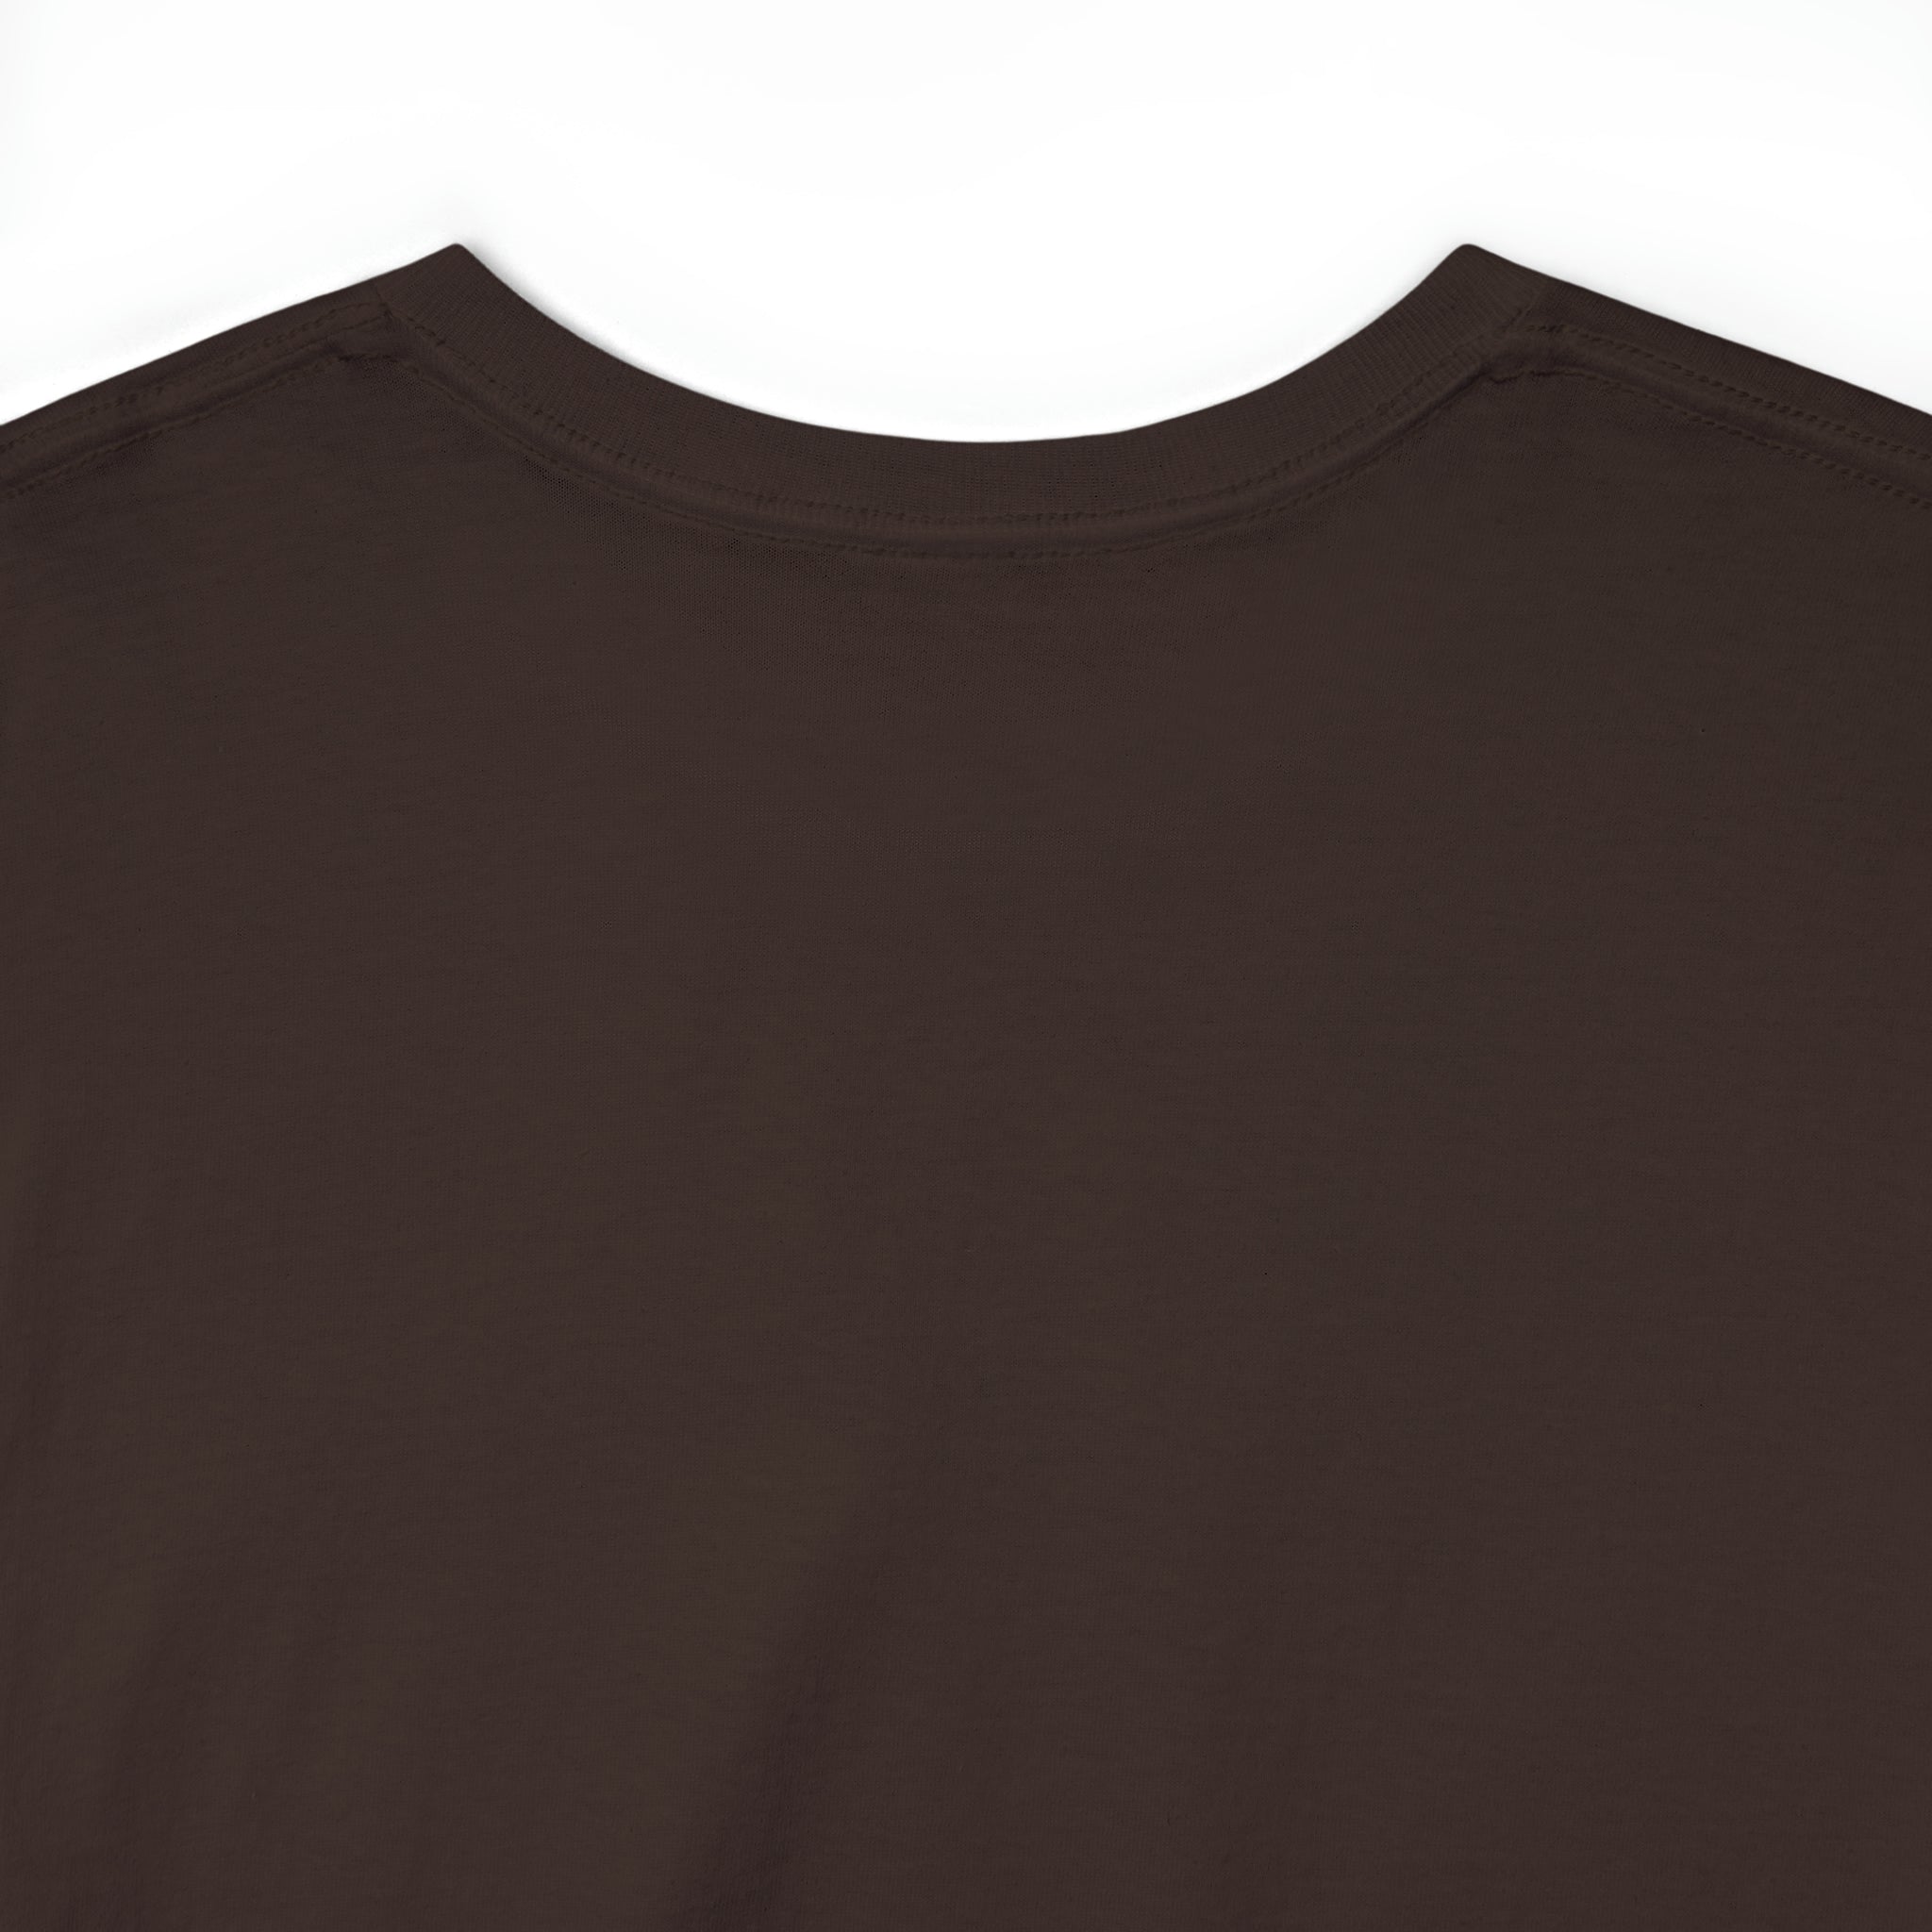 Kanye West Unisex T-Shirt | Fan Merch